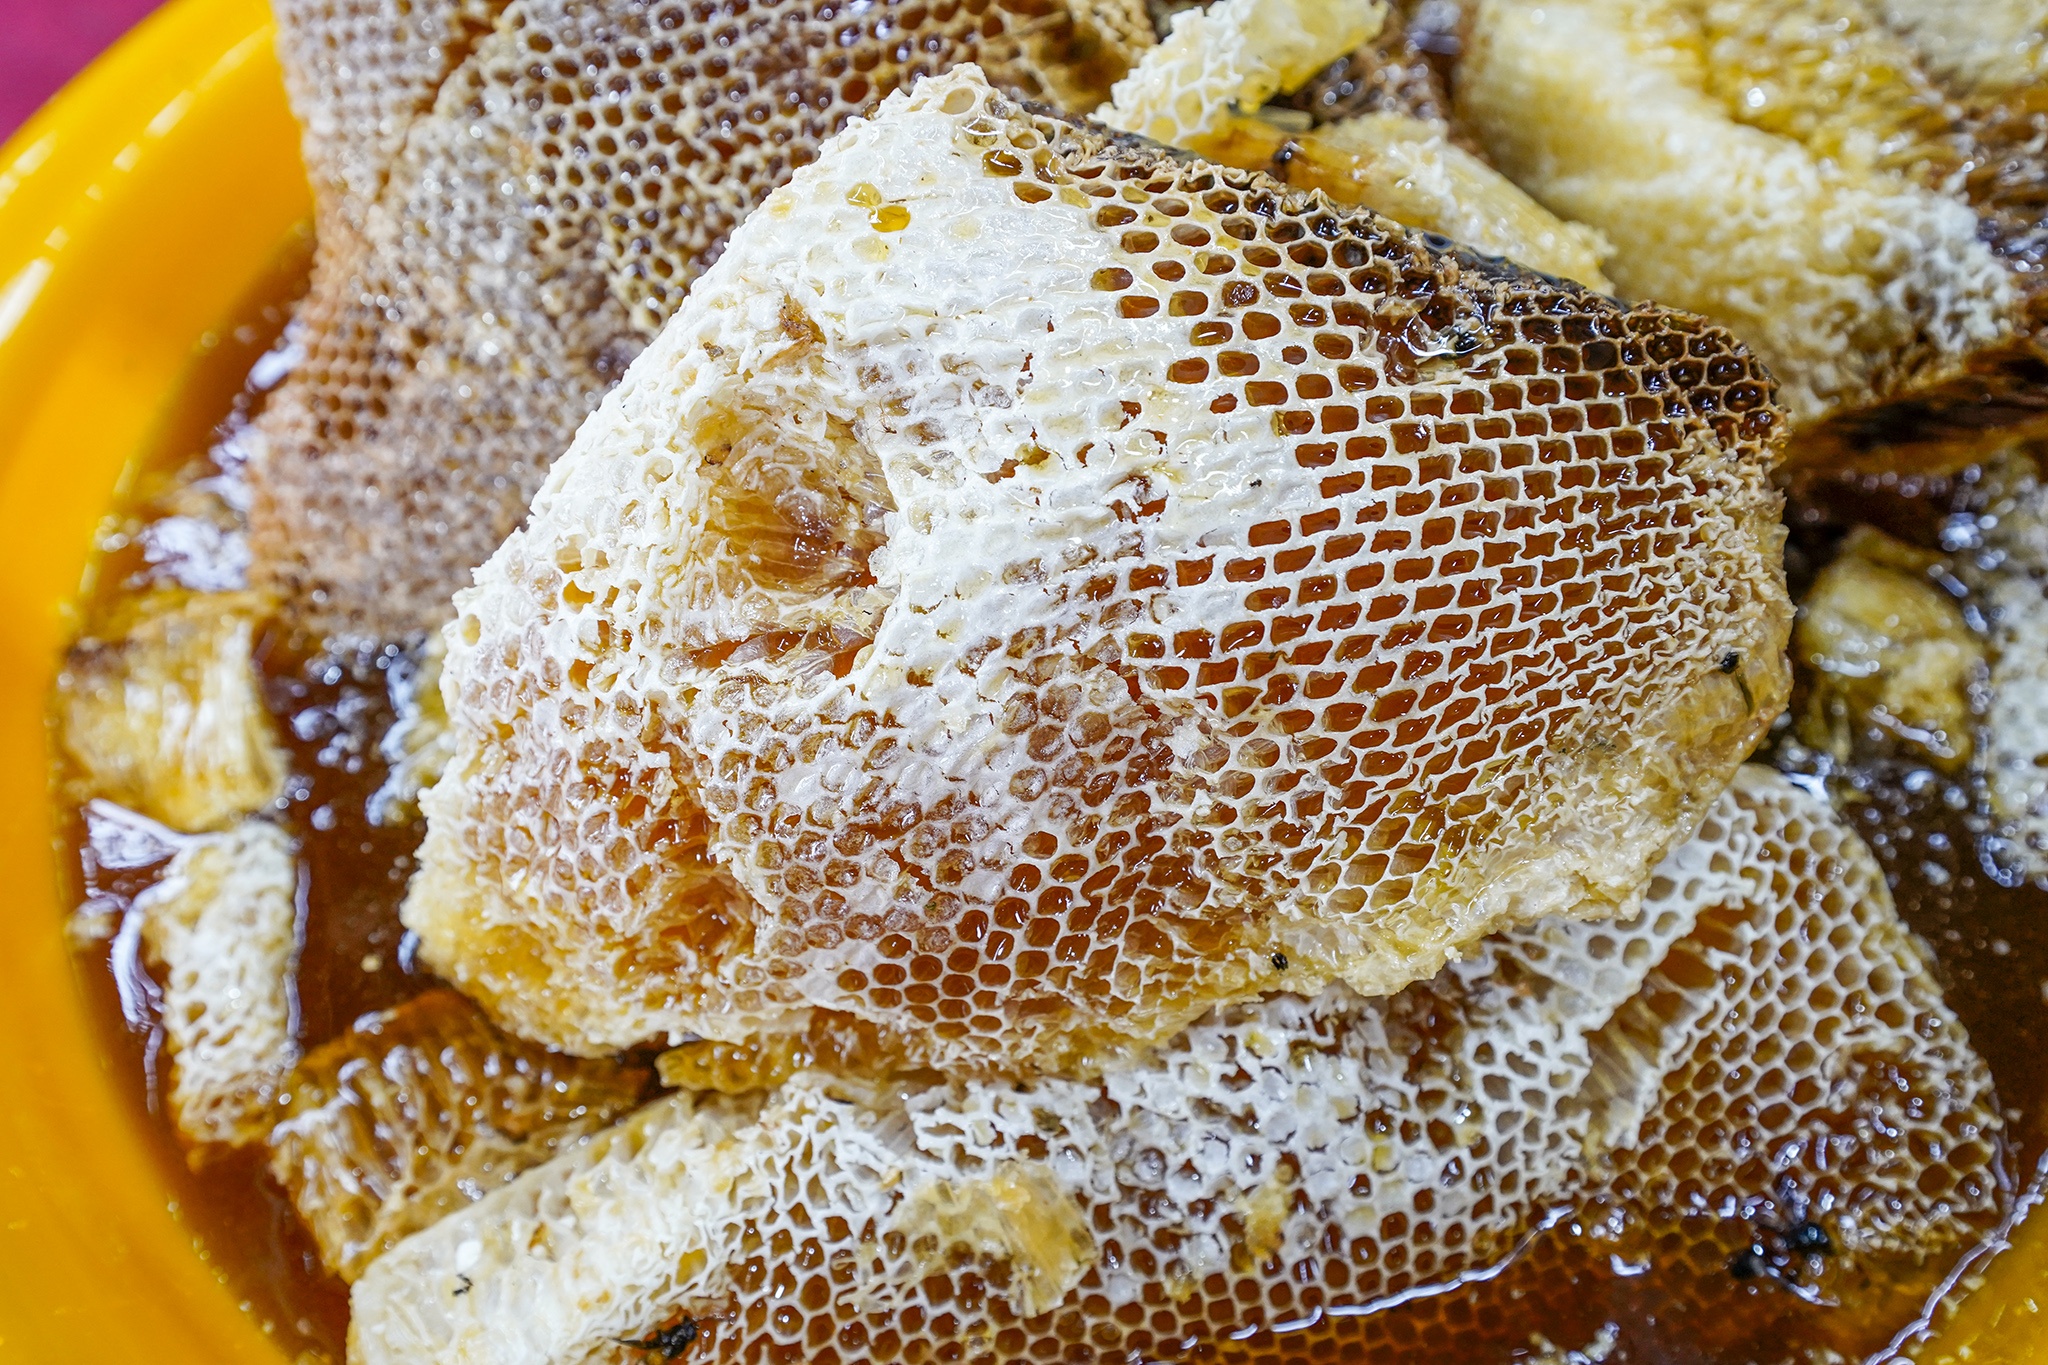 Trải nghiệm, khám phá nghề khai thác ong mật ở vùng rừng U Minh Hạ-3